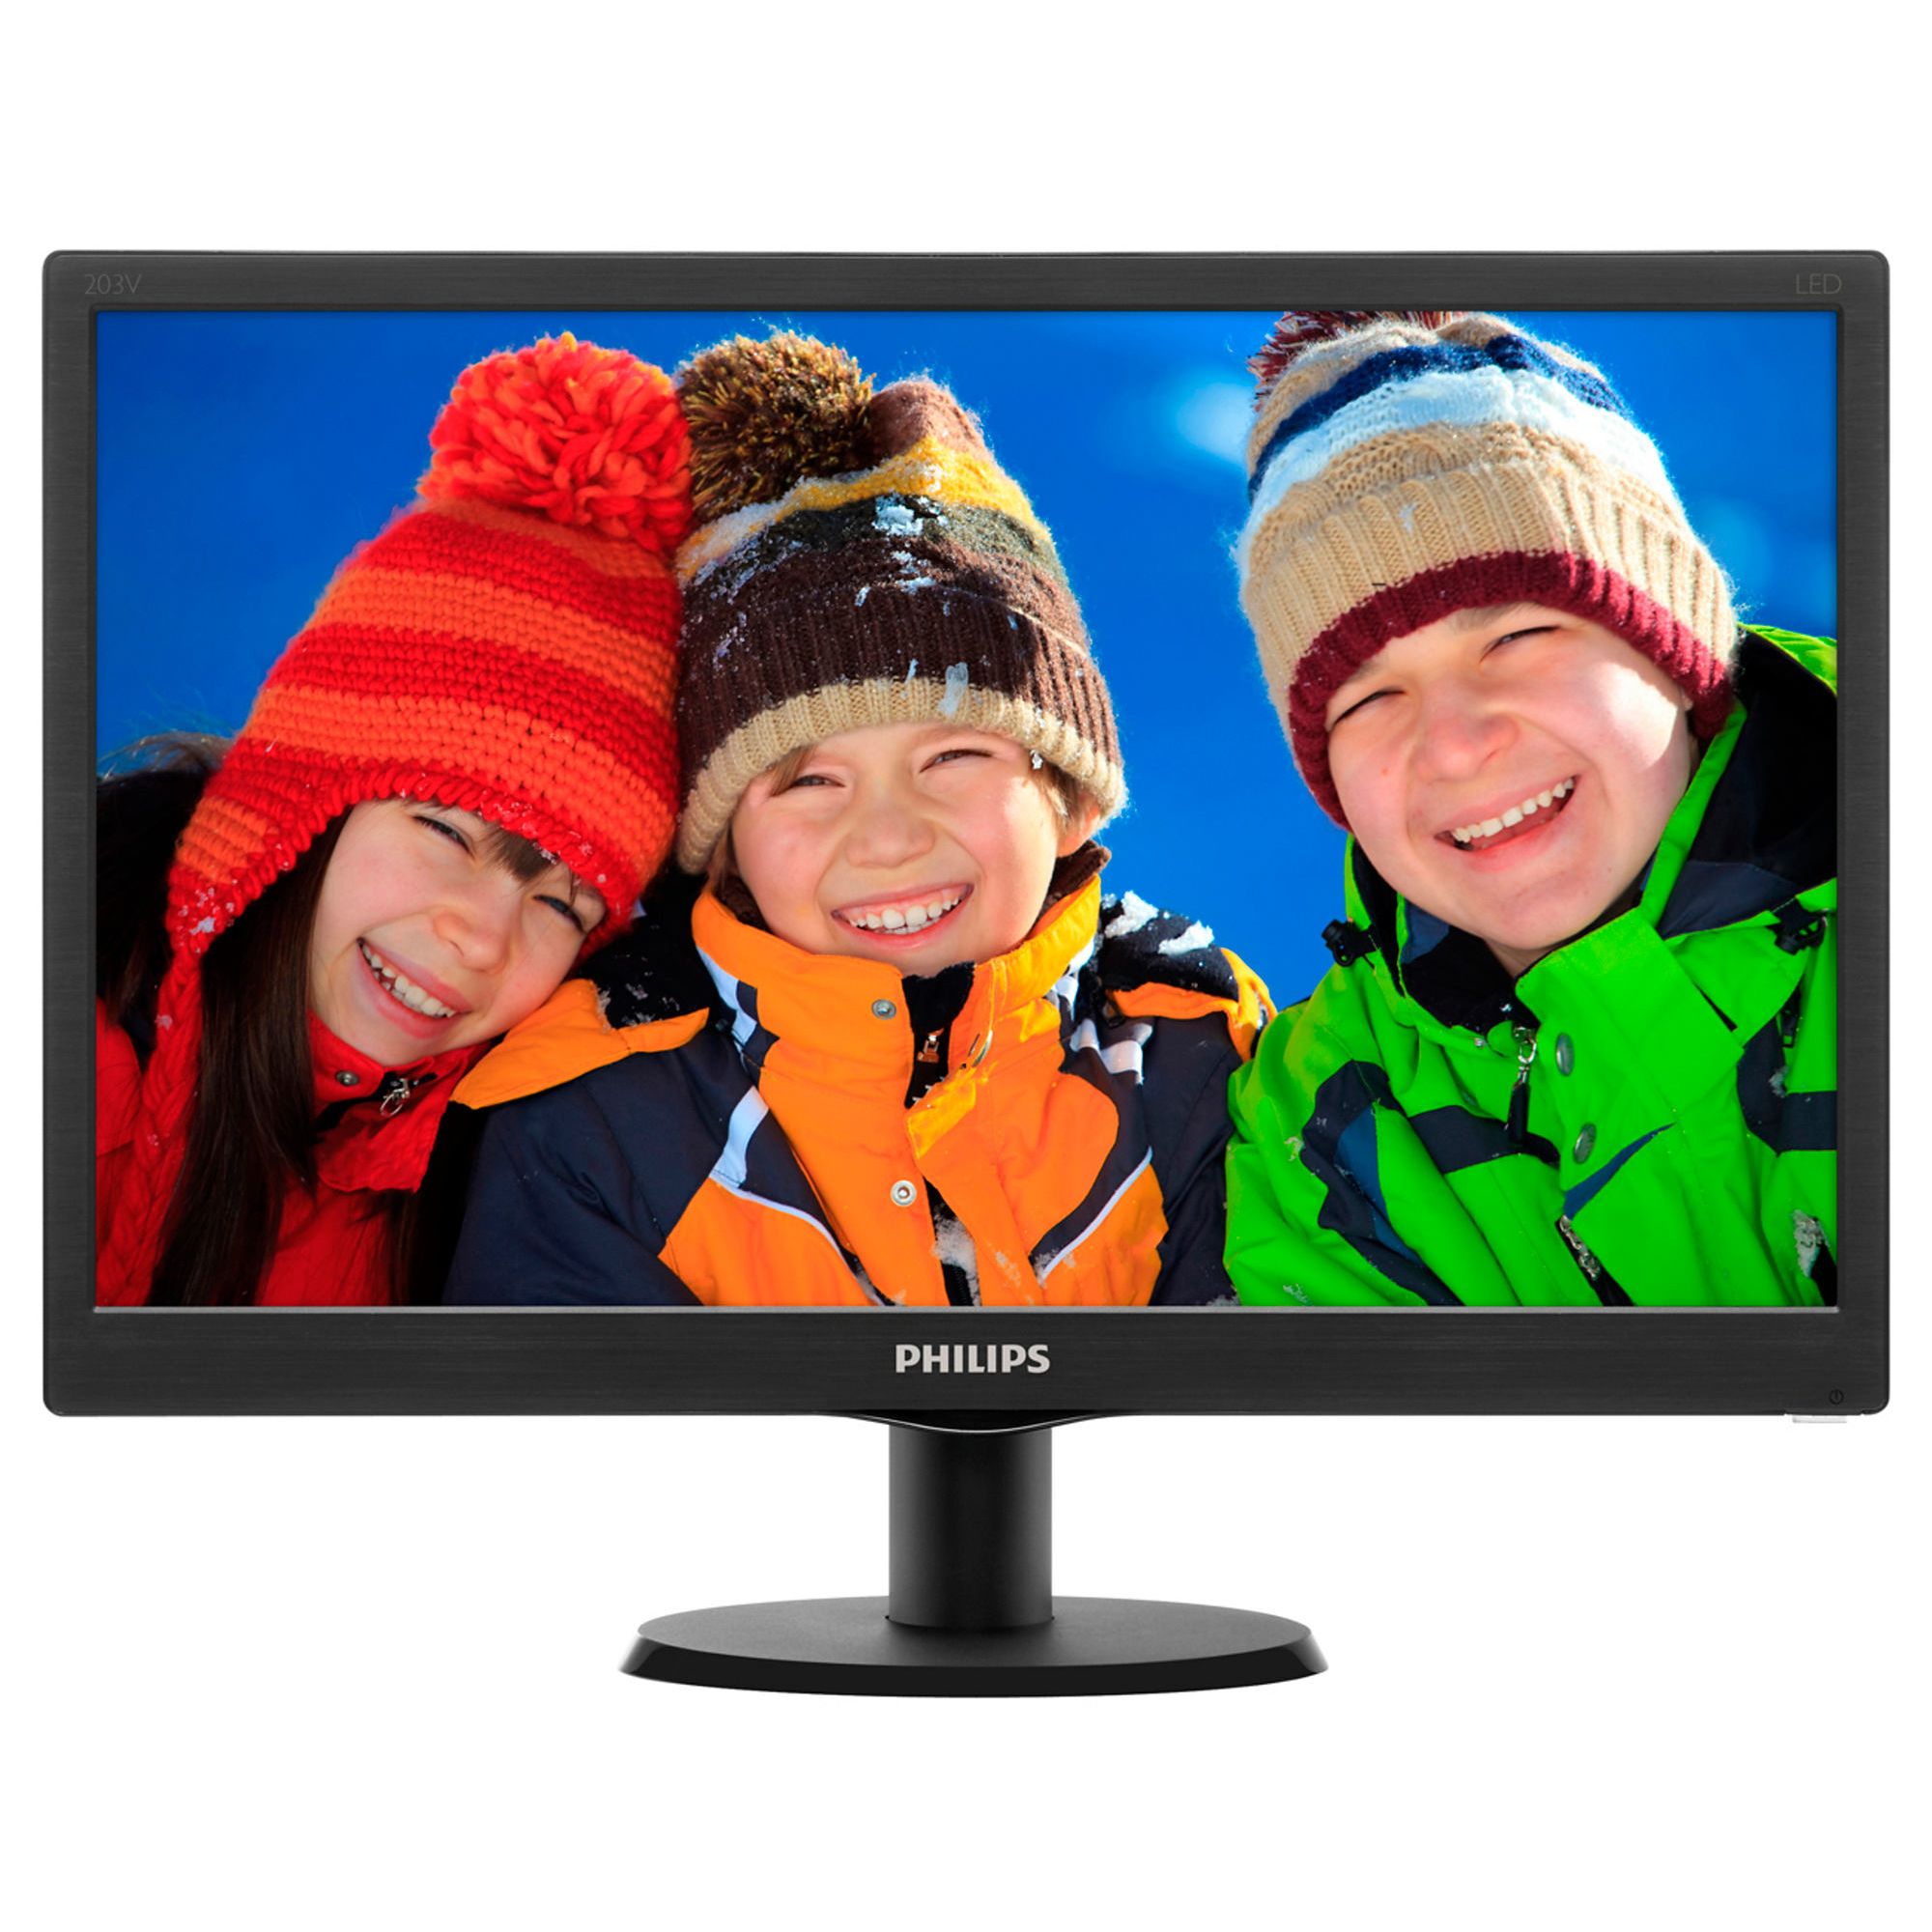  Monitor LED Philips 203V5LSB2/10, 19.5", HD, Negru 